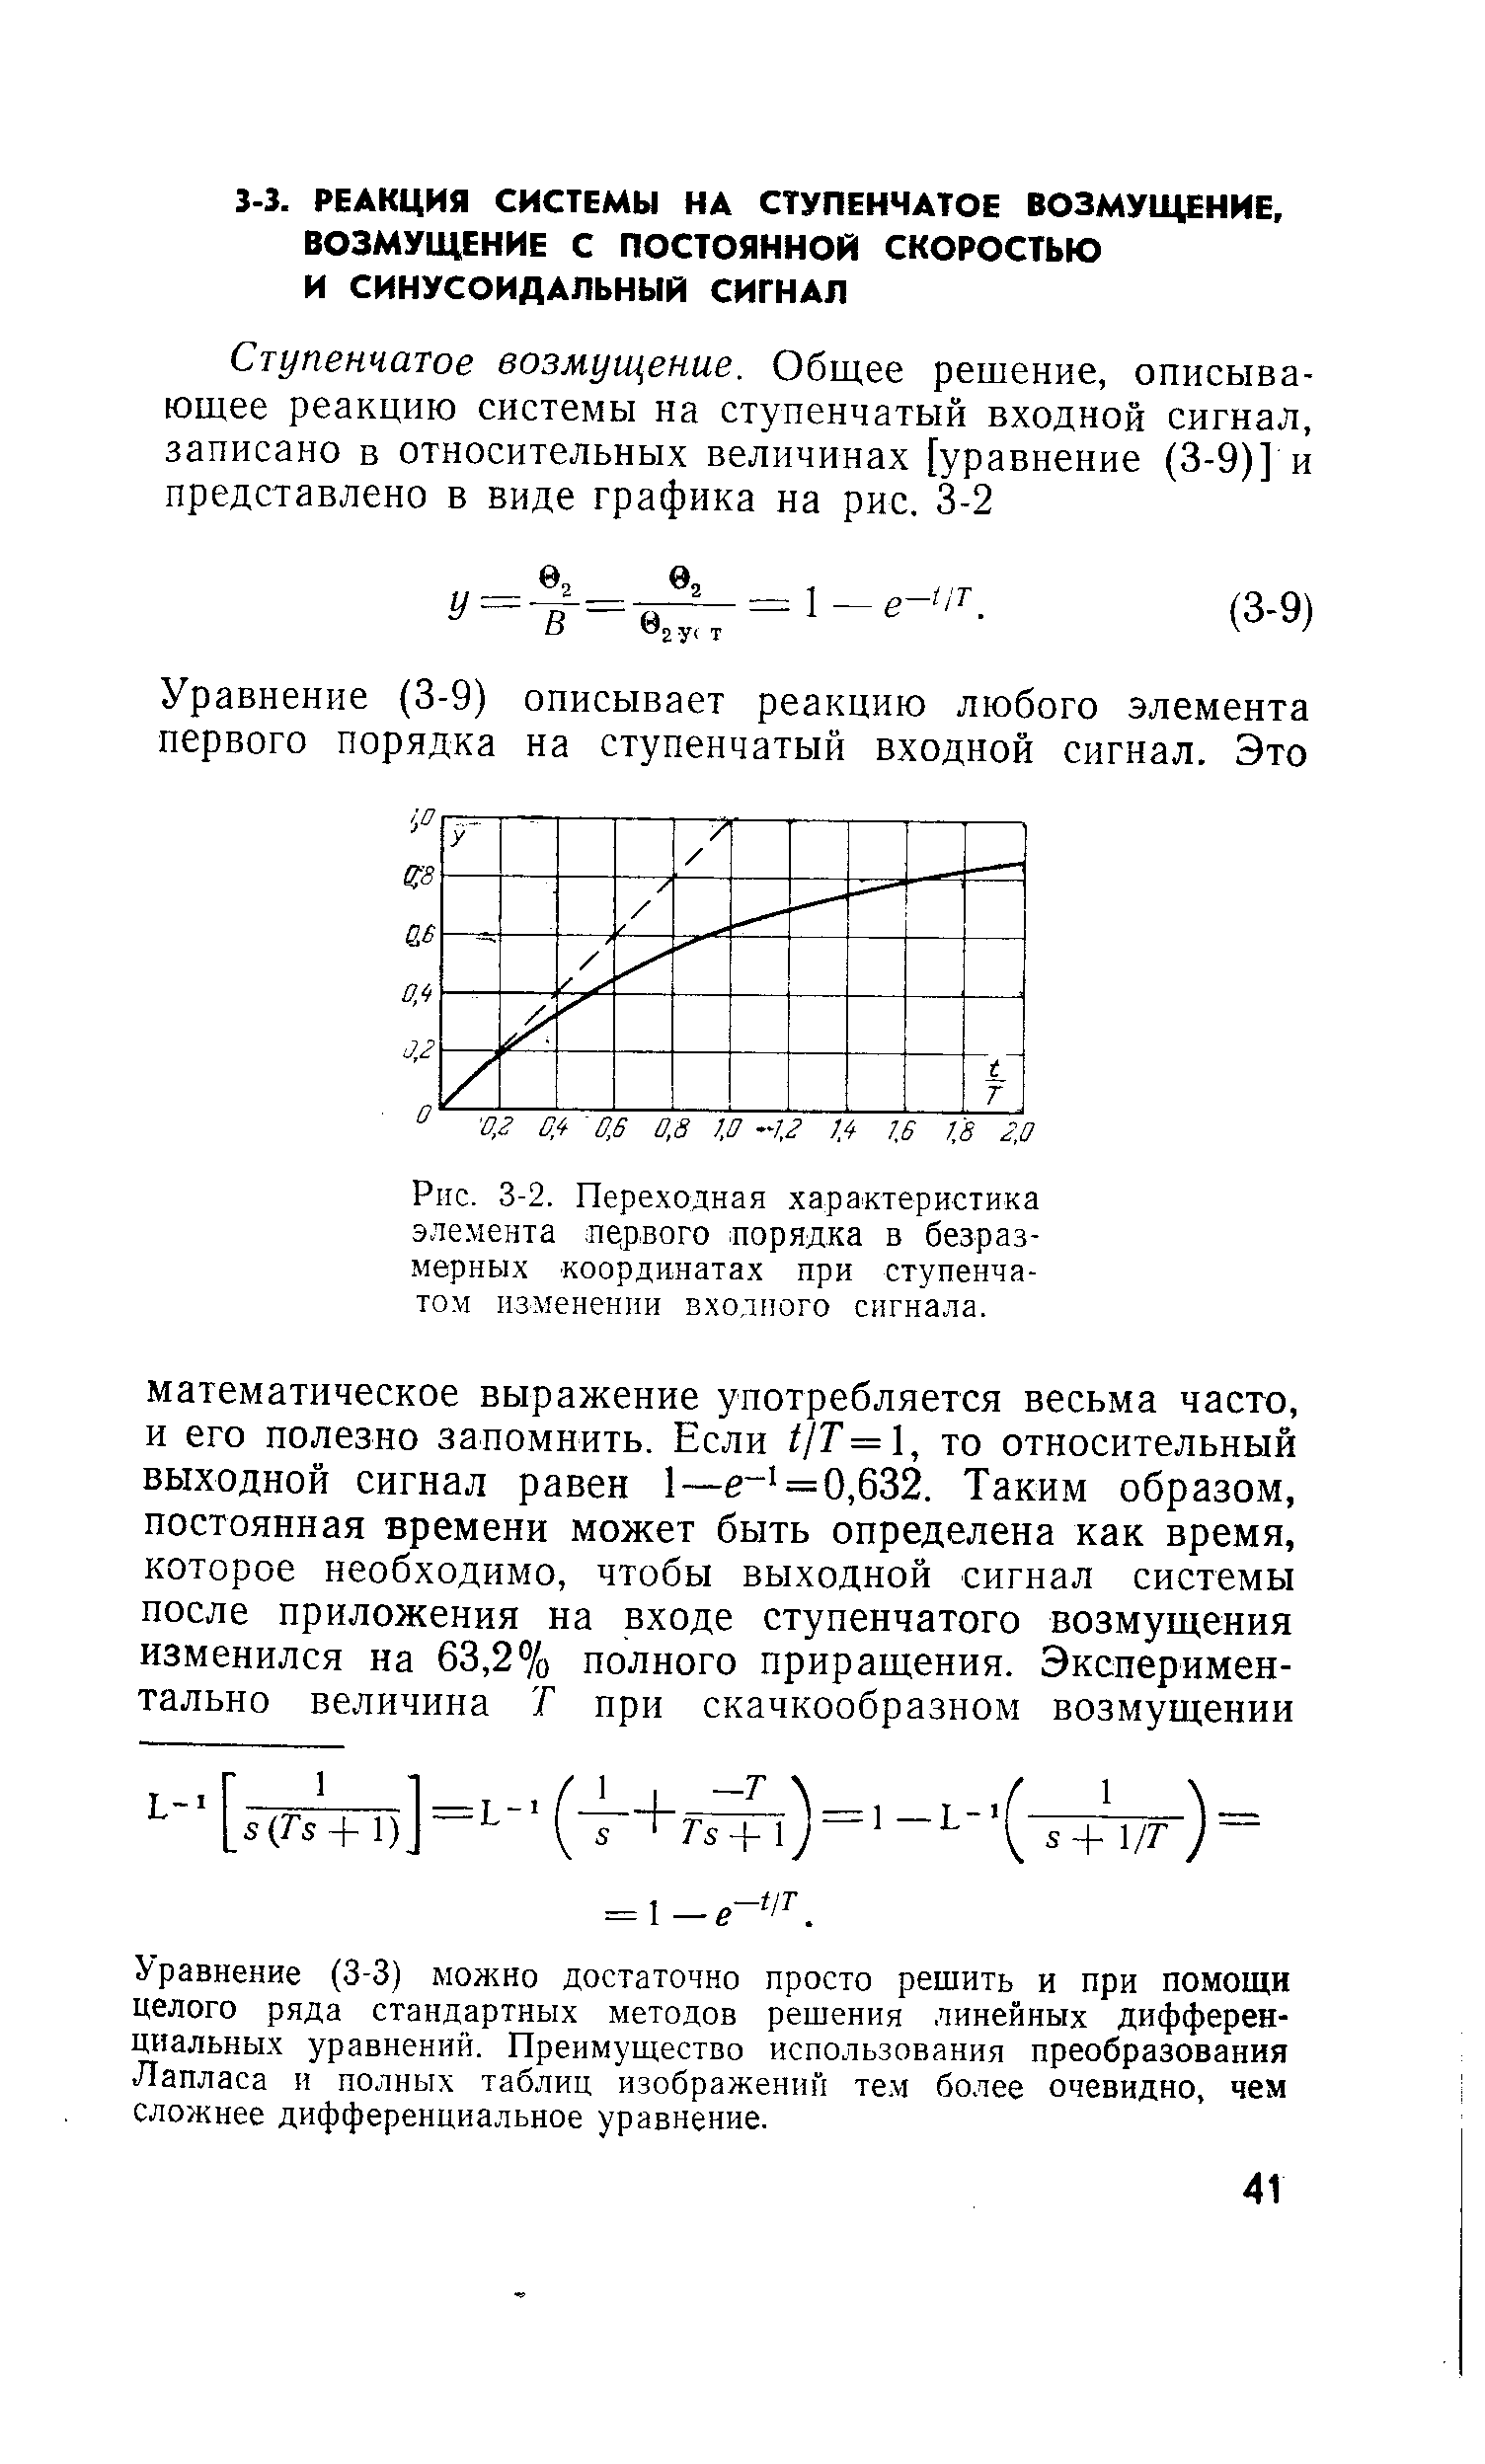 Переходная характеристика элемента яедвого порядка в безразмерных координатах при ступенчатом изменении входного сигнала.
